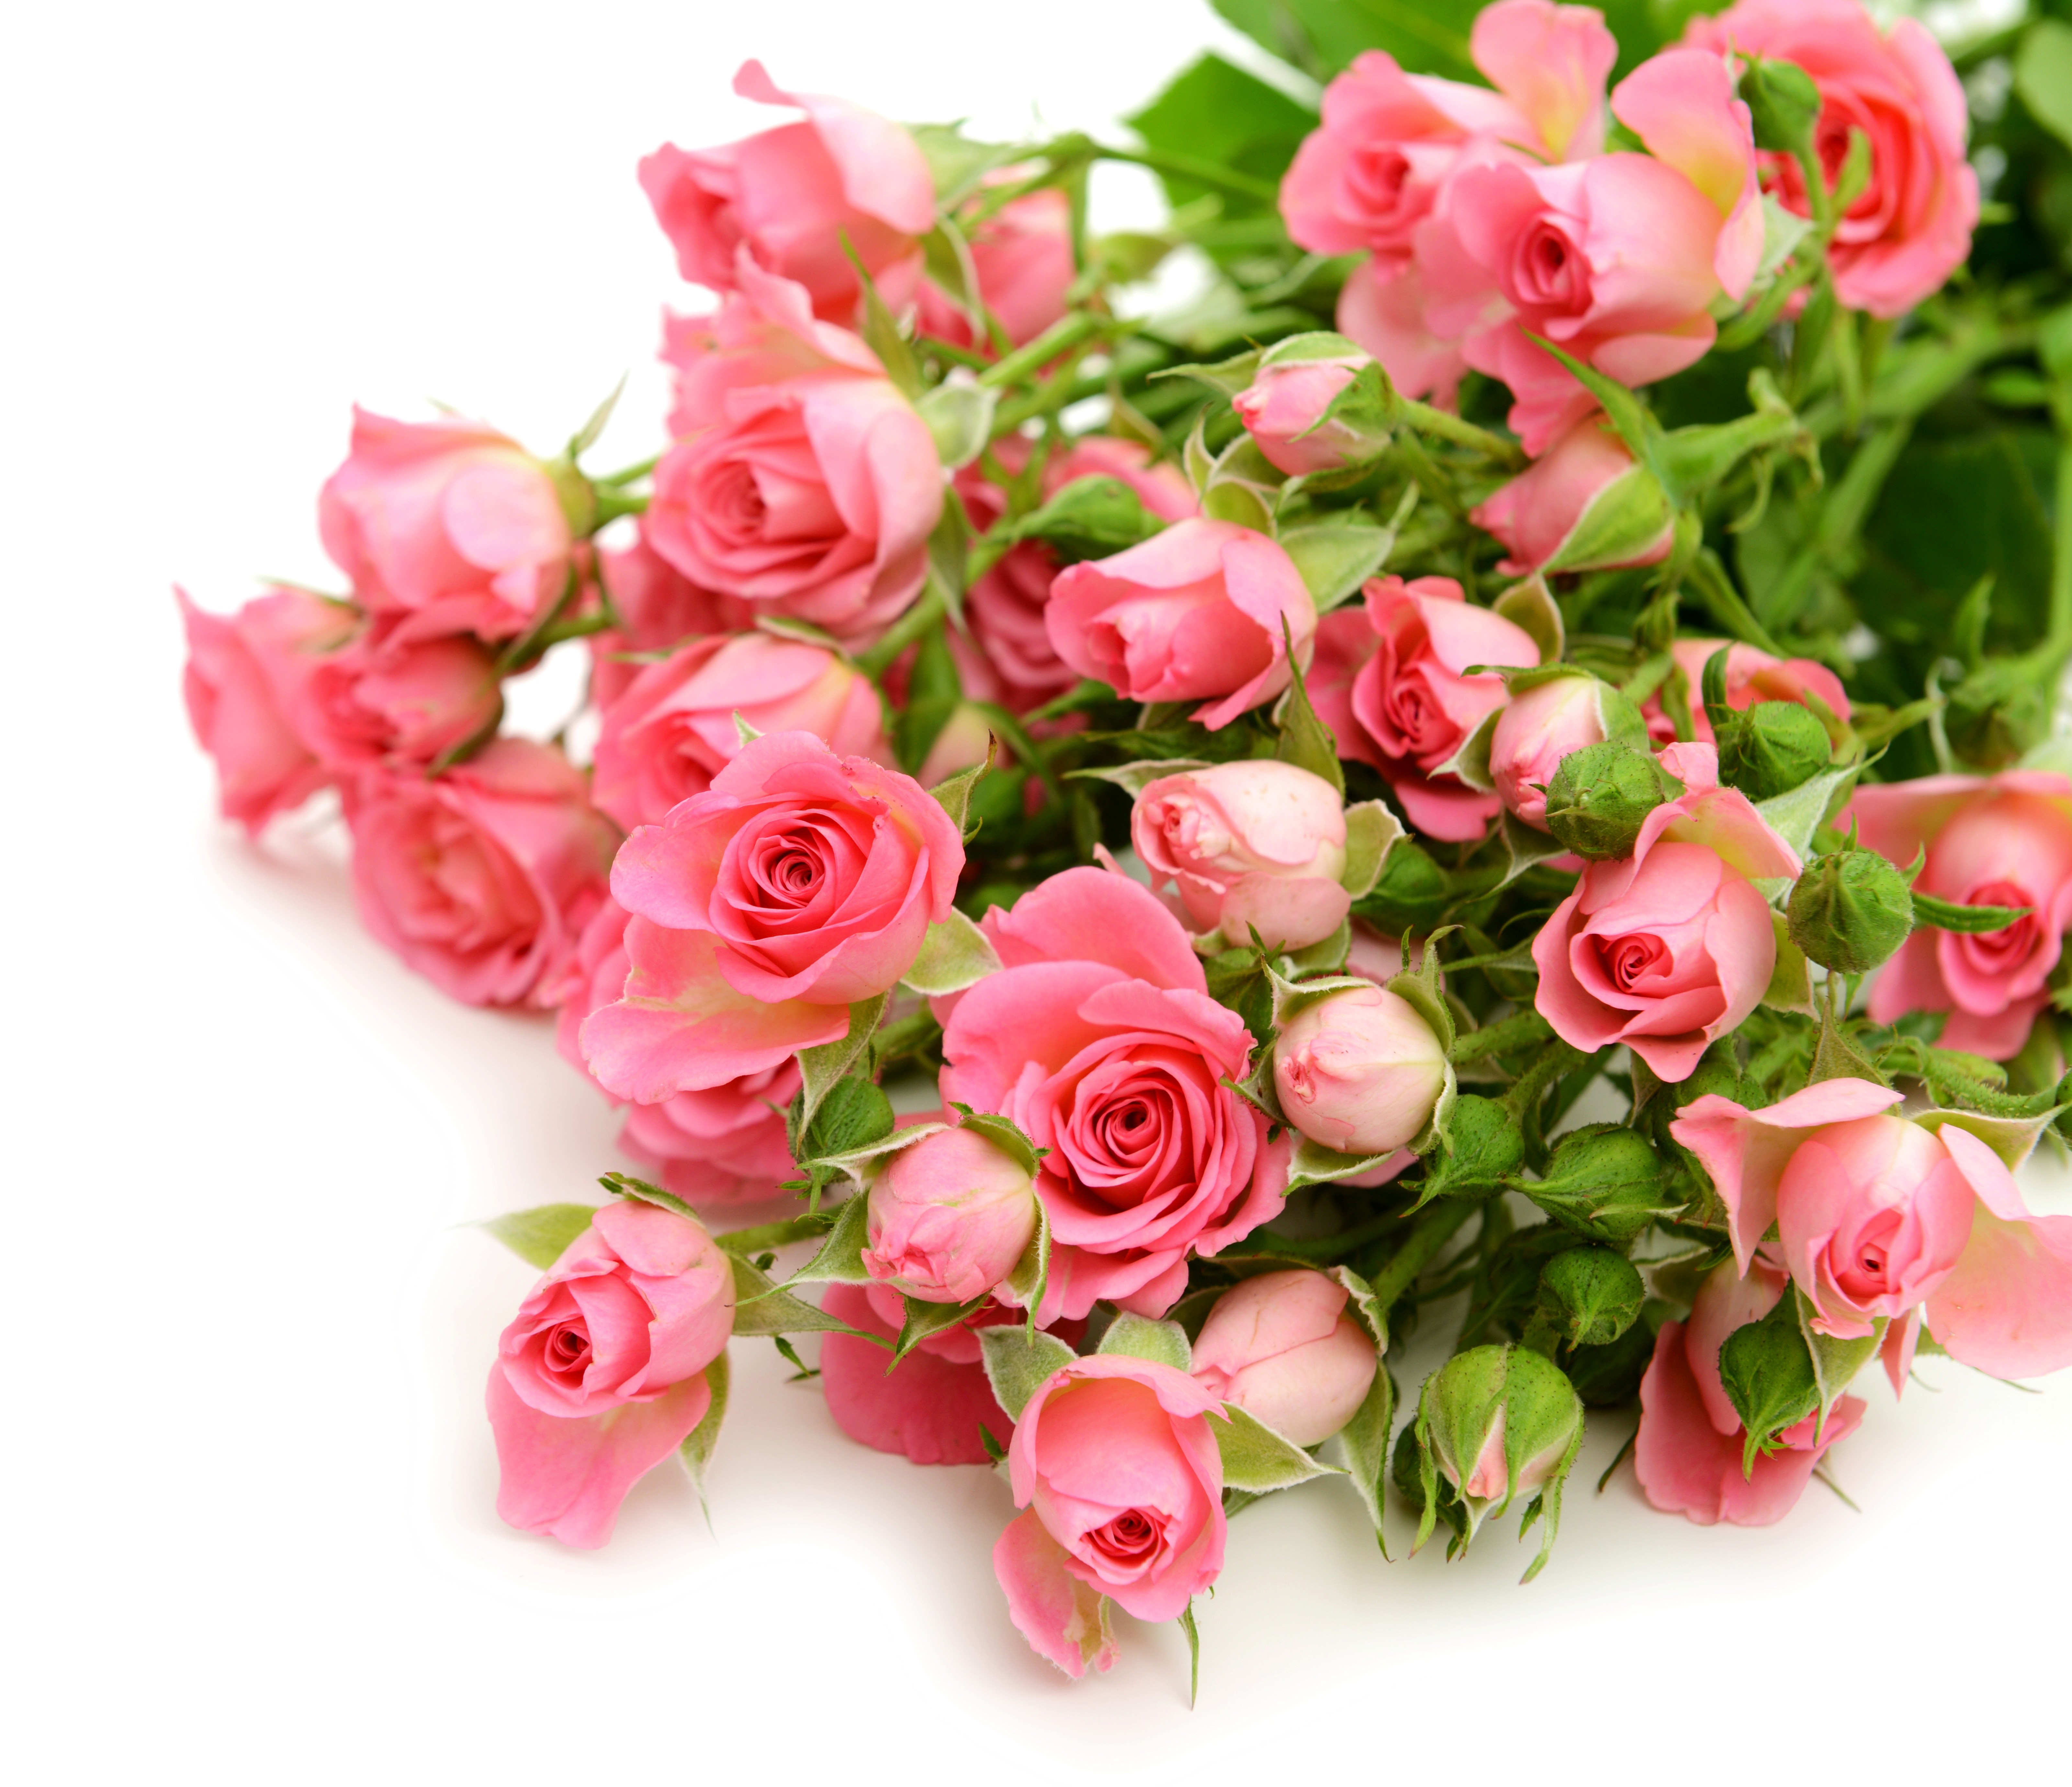 Скачать обои бесплатно Природа, Цветок, Тюльпан, Земля/природа, Розовый Цветок, Флауэрсы картинка на рабочий стол ПК